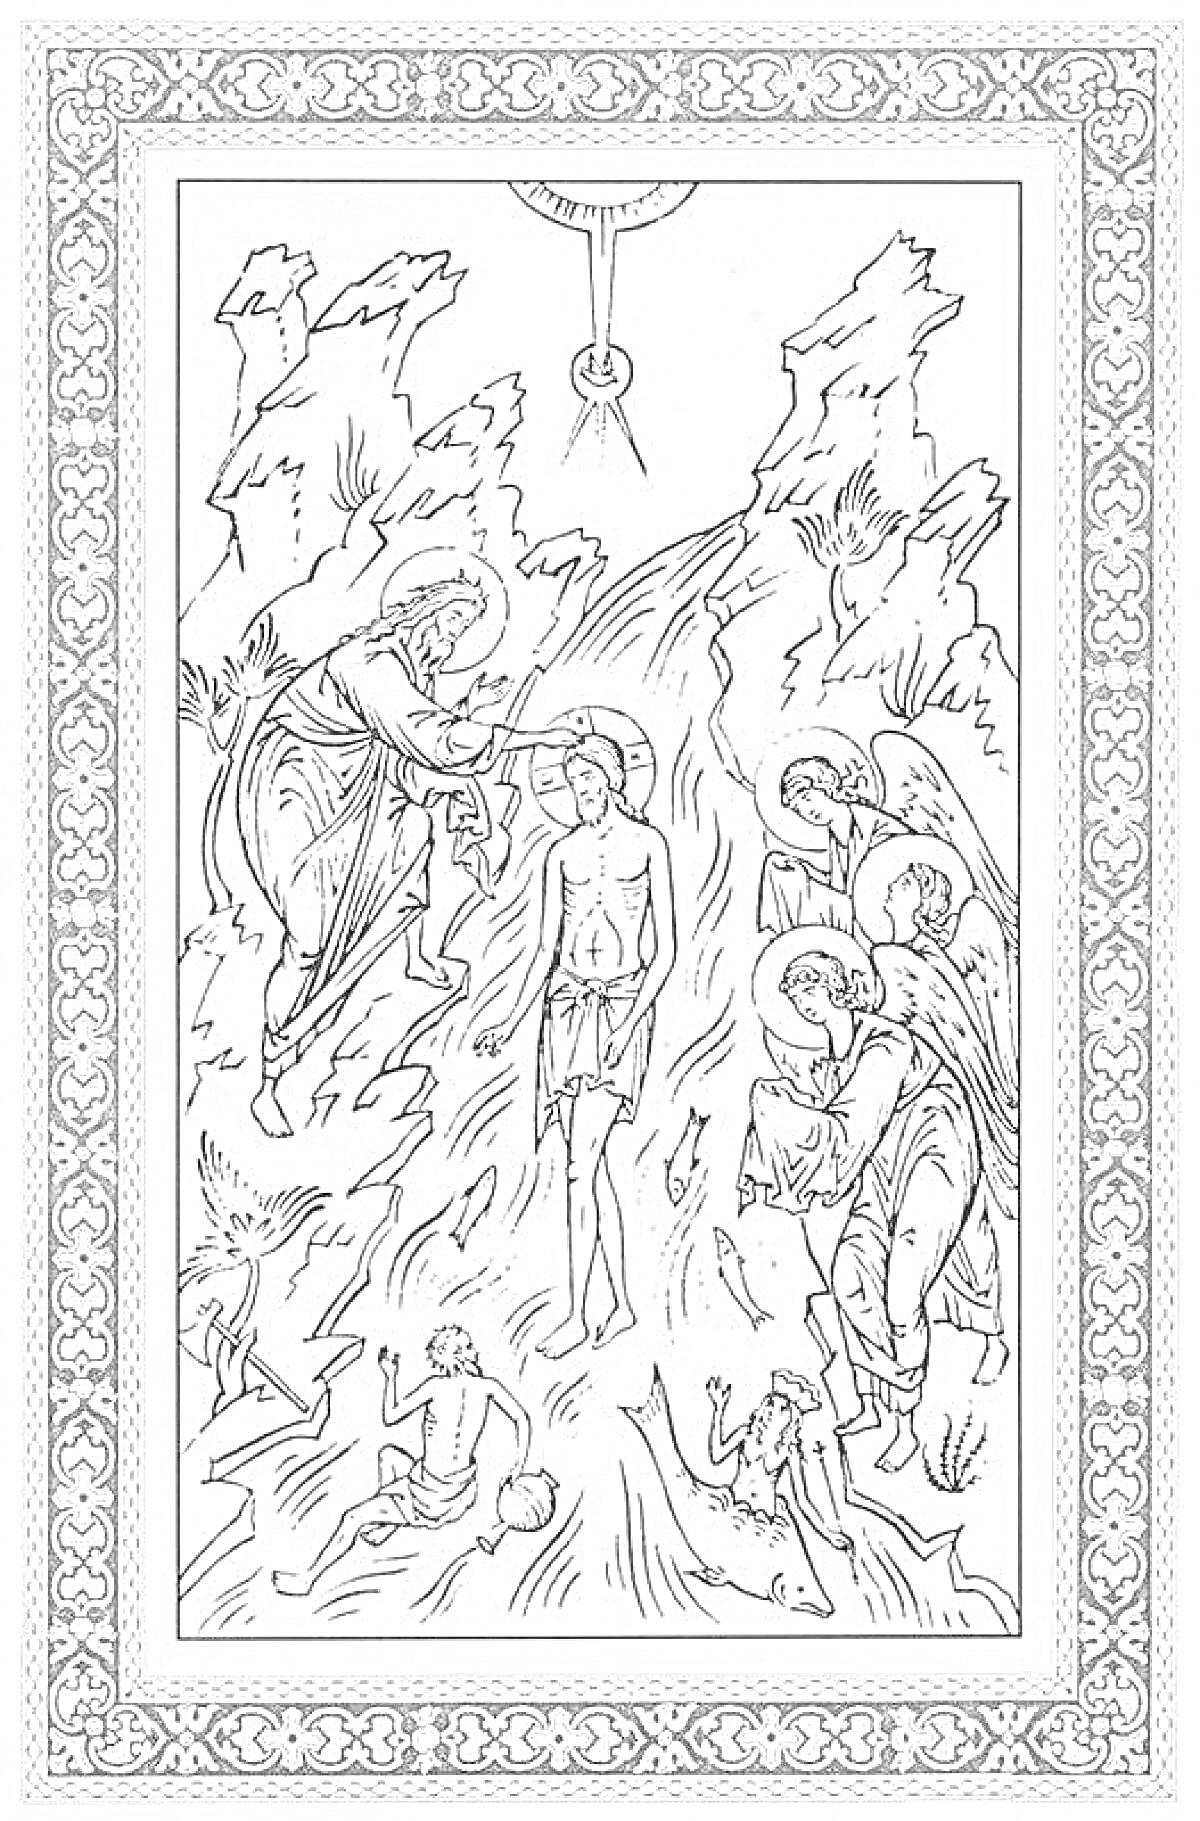 Раскраска Крещение Господне, с изображением Иоанна Крестителя, Иисуса Христа, ангелов и реку Иордан, в декоративной рамке